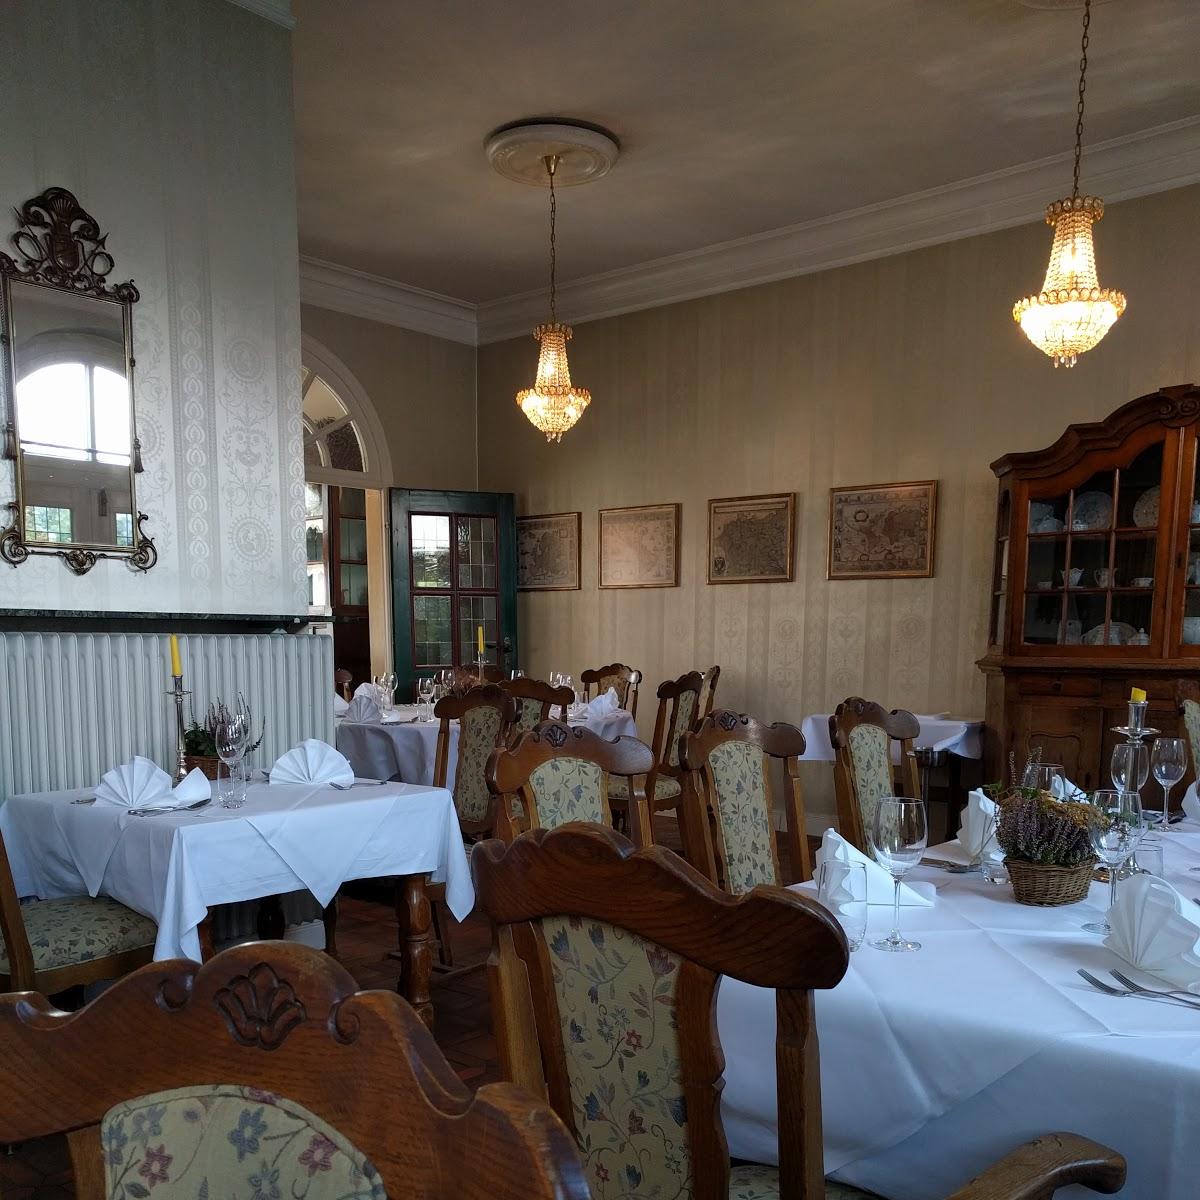 Restaurant "Jagdhaus Wiedehage" in  Haselünne